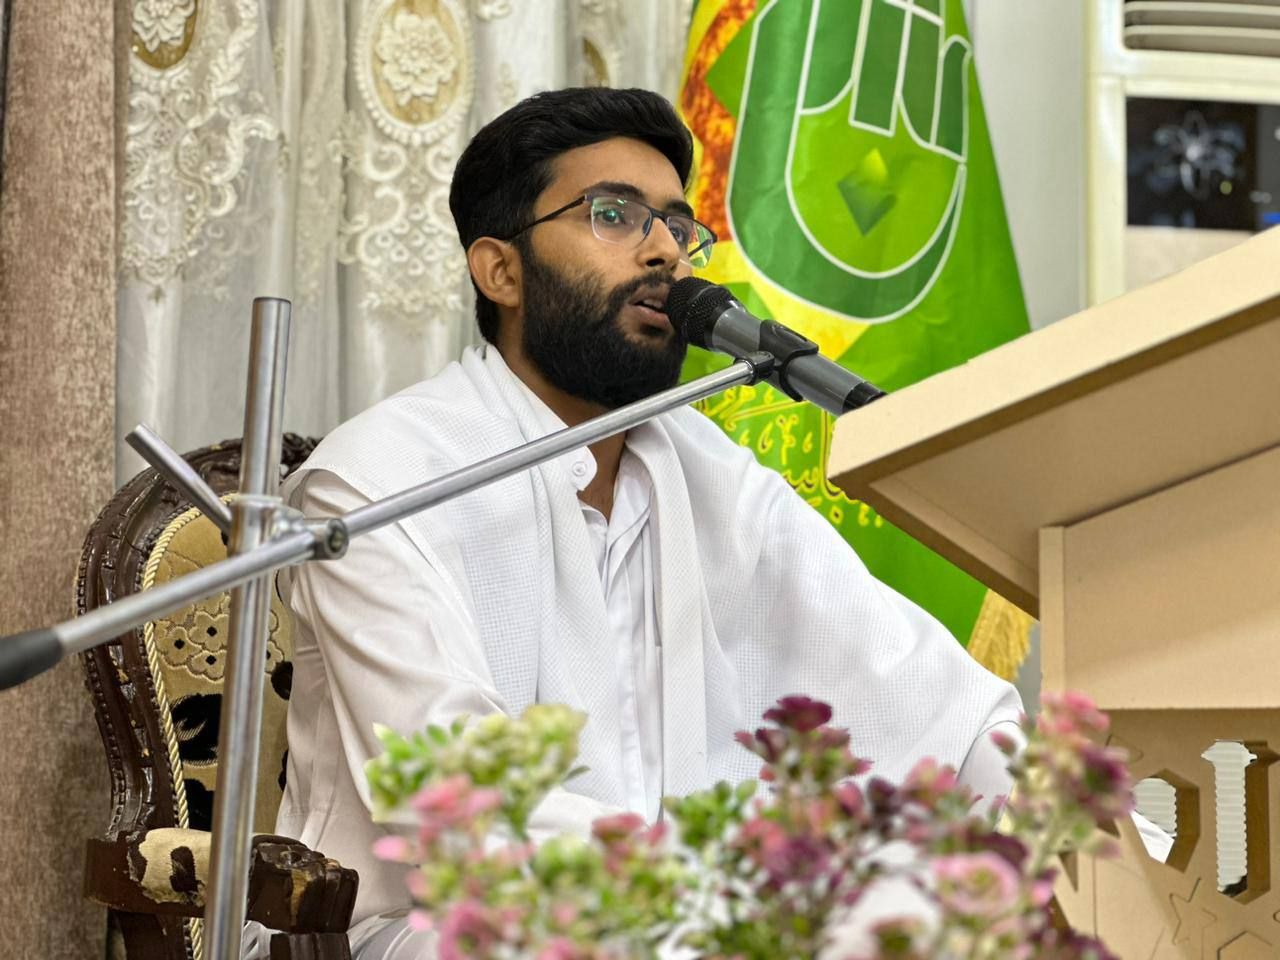 المَجمَع العلميّ يطلق مشروع المحافل القرآنية المتنقلة في قضاء الهندية